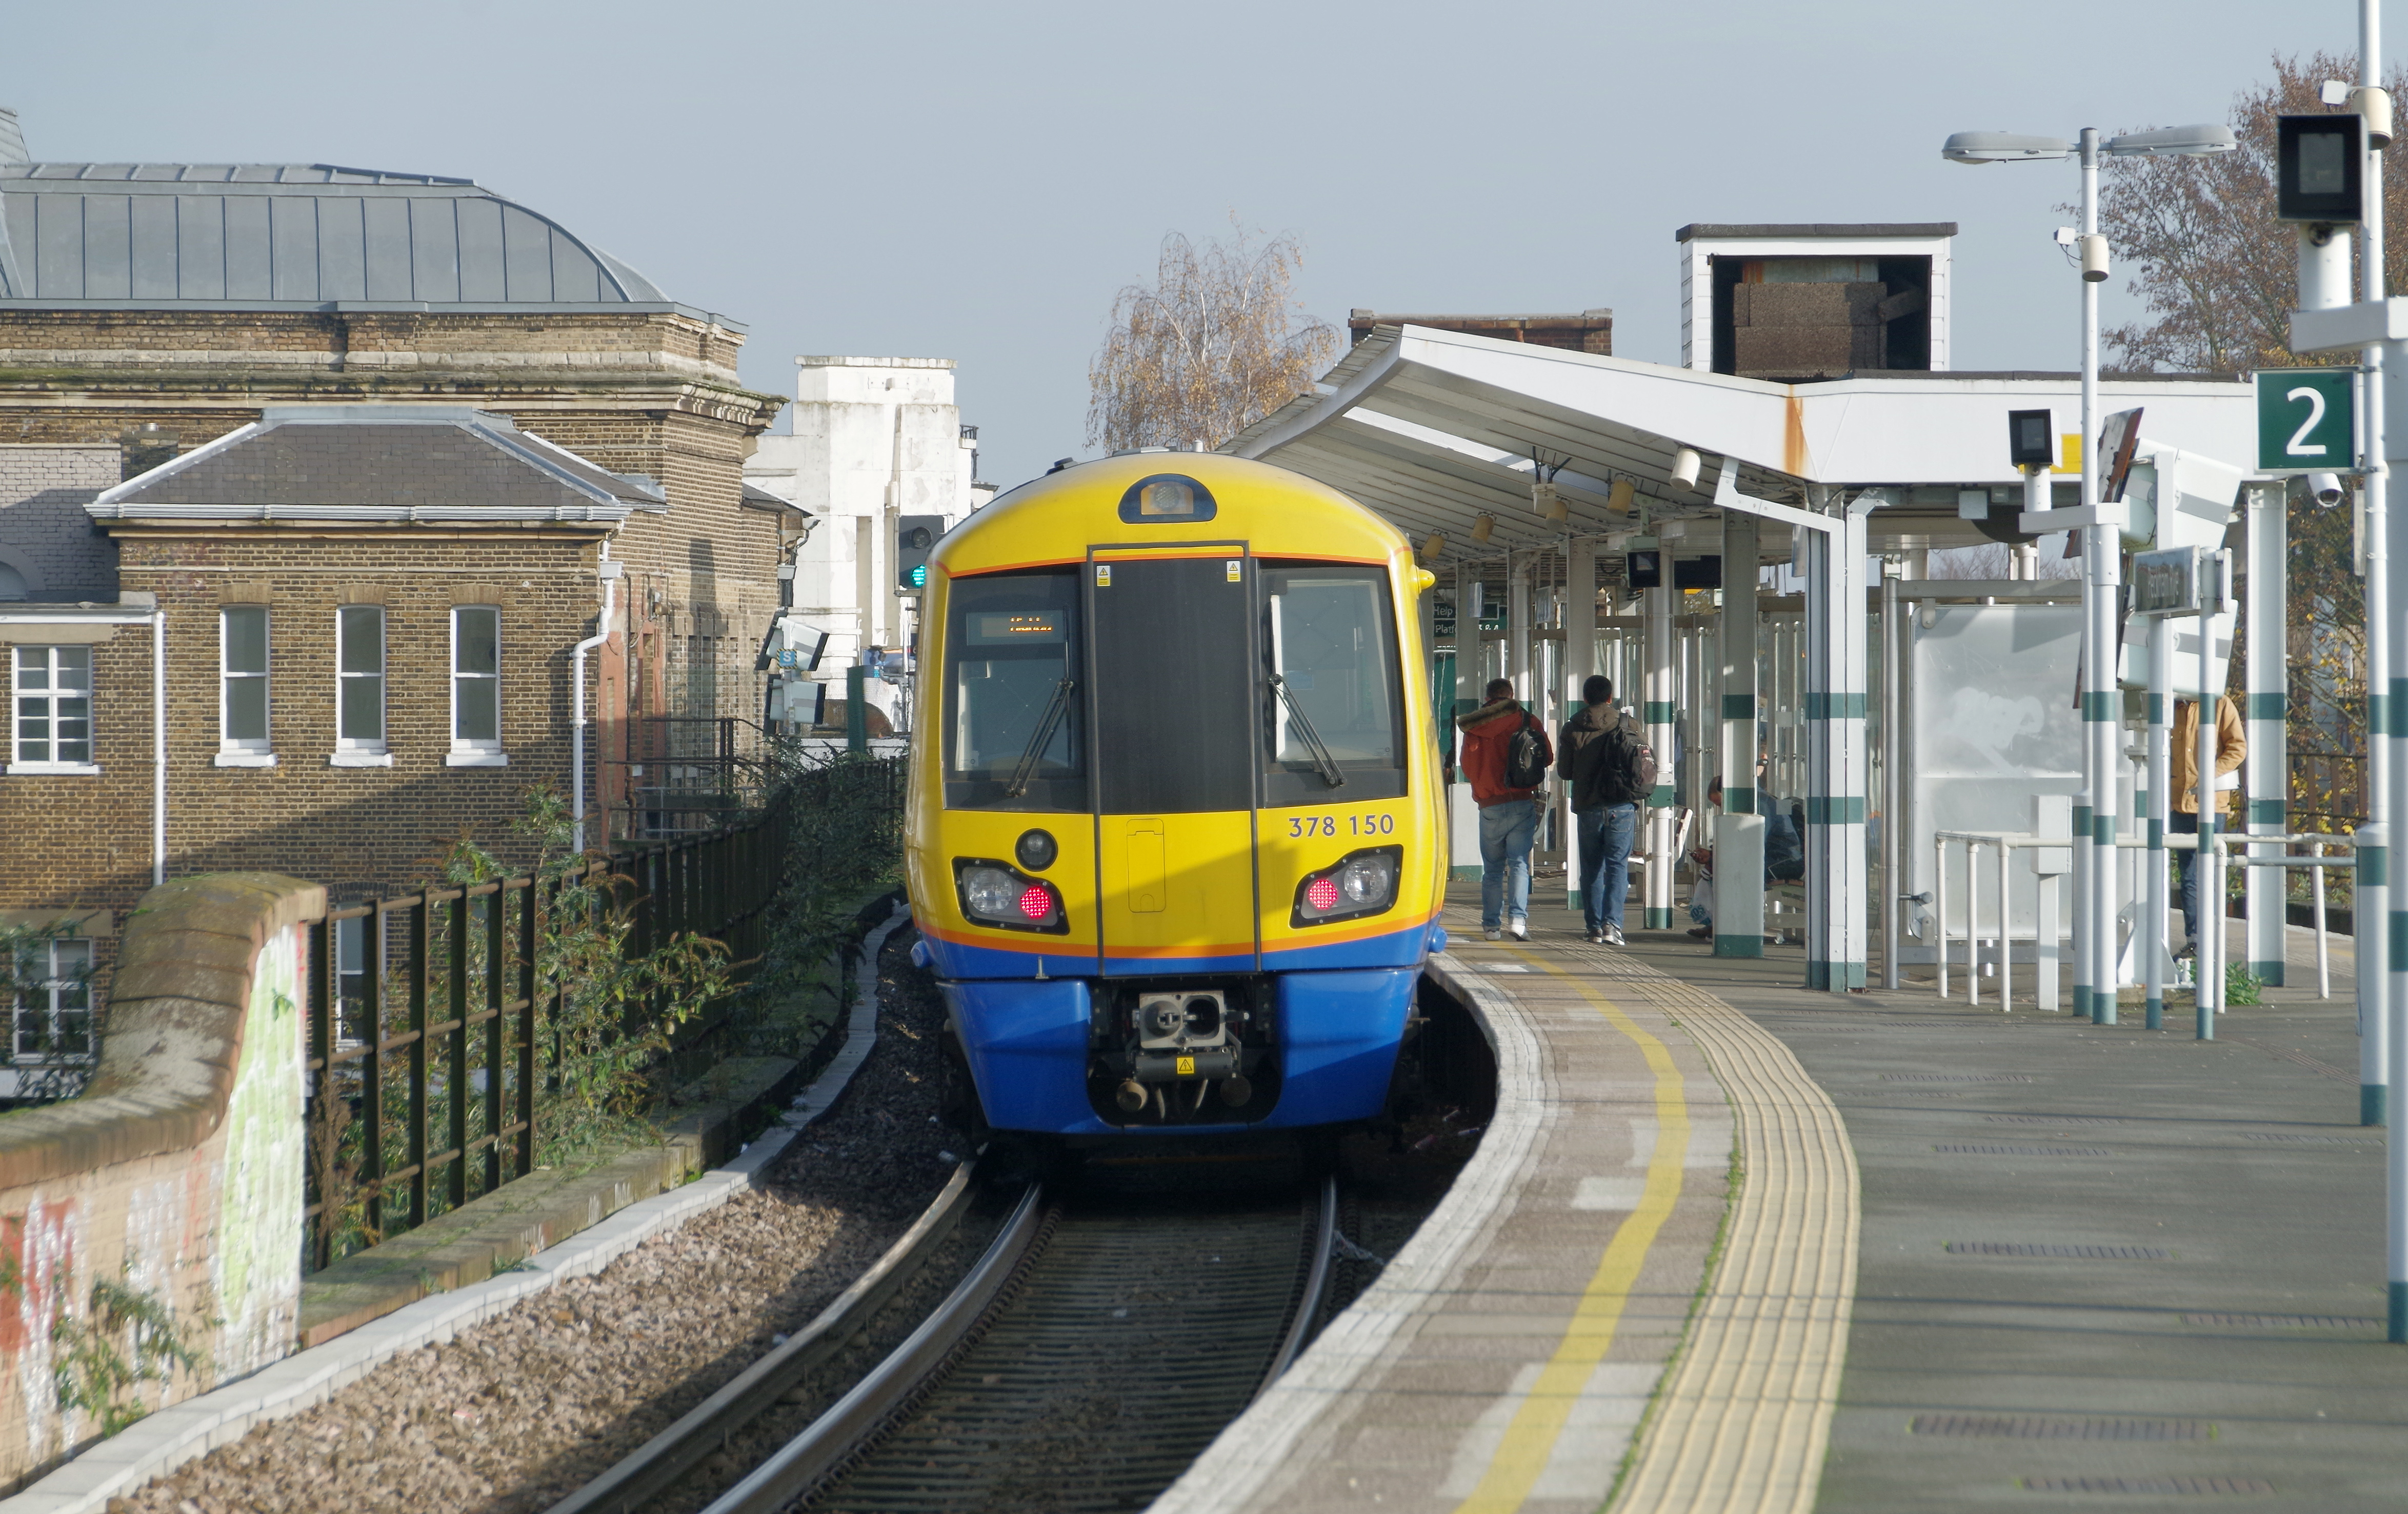 Peckham Rye railway station MMB 17 378150